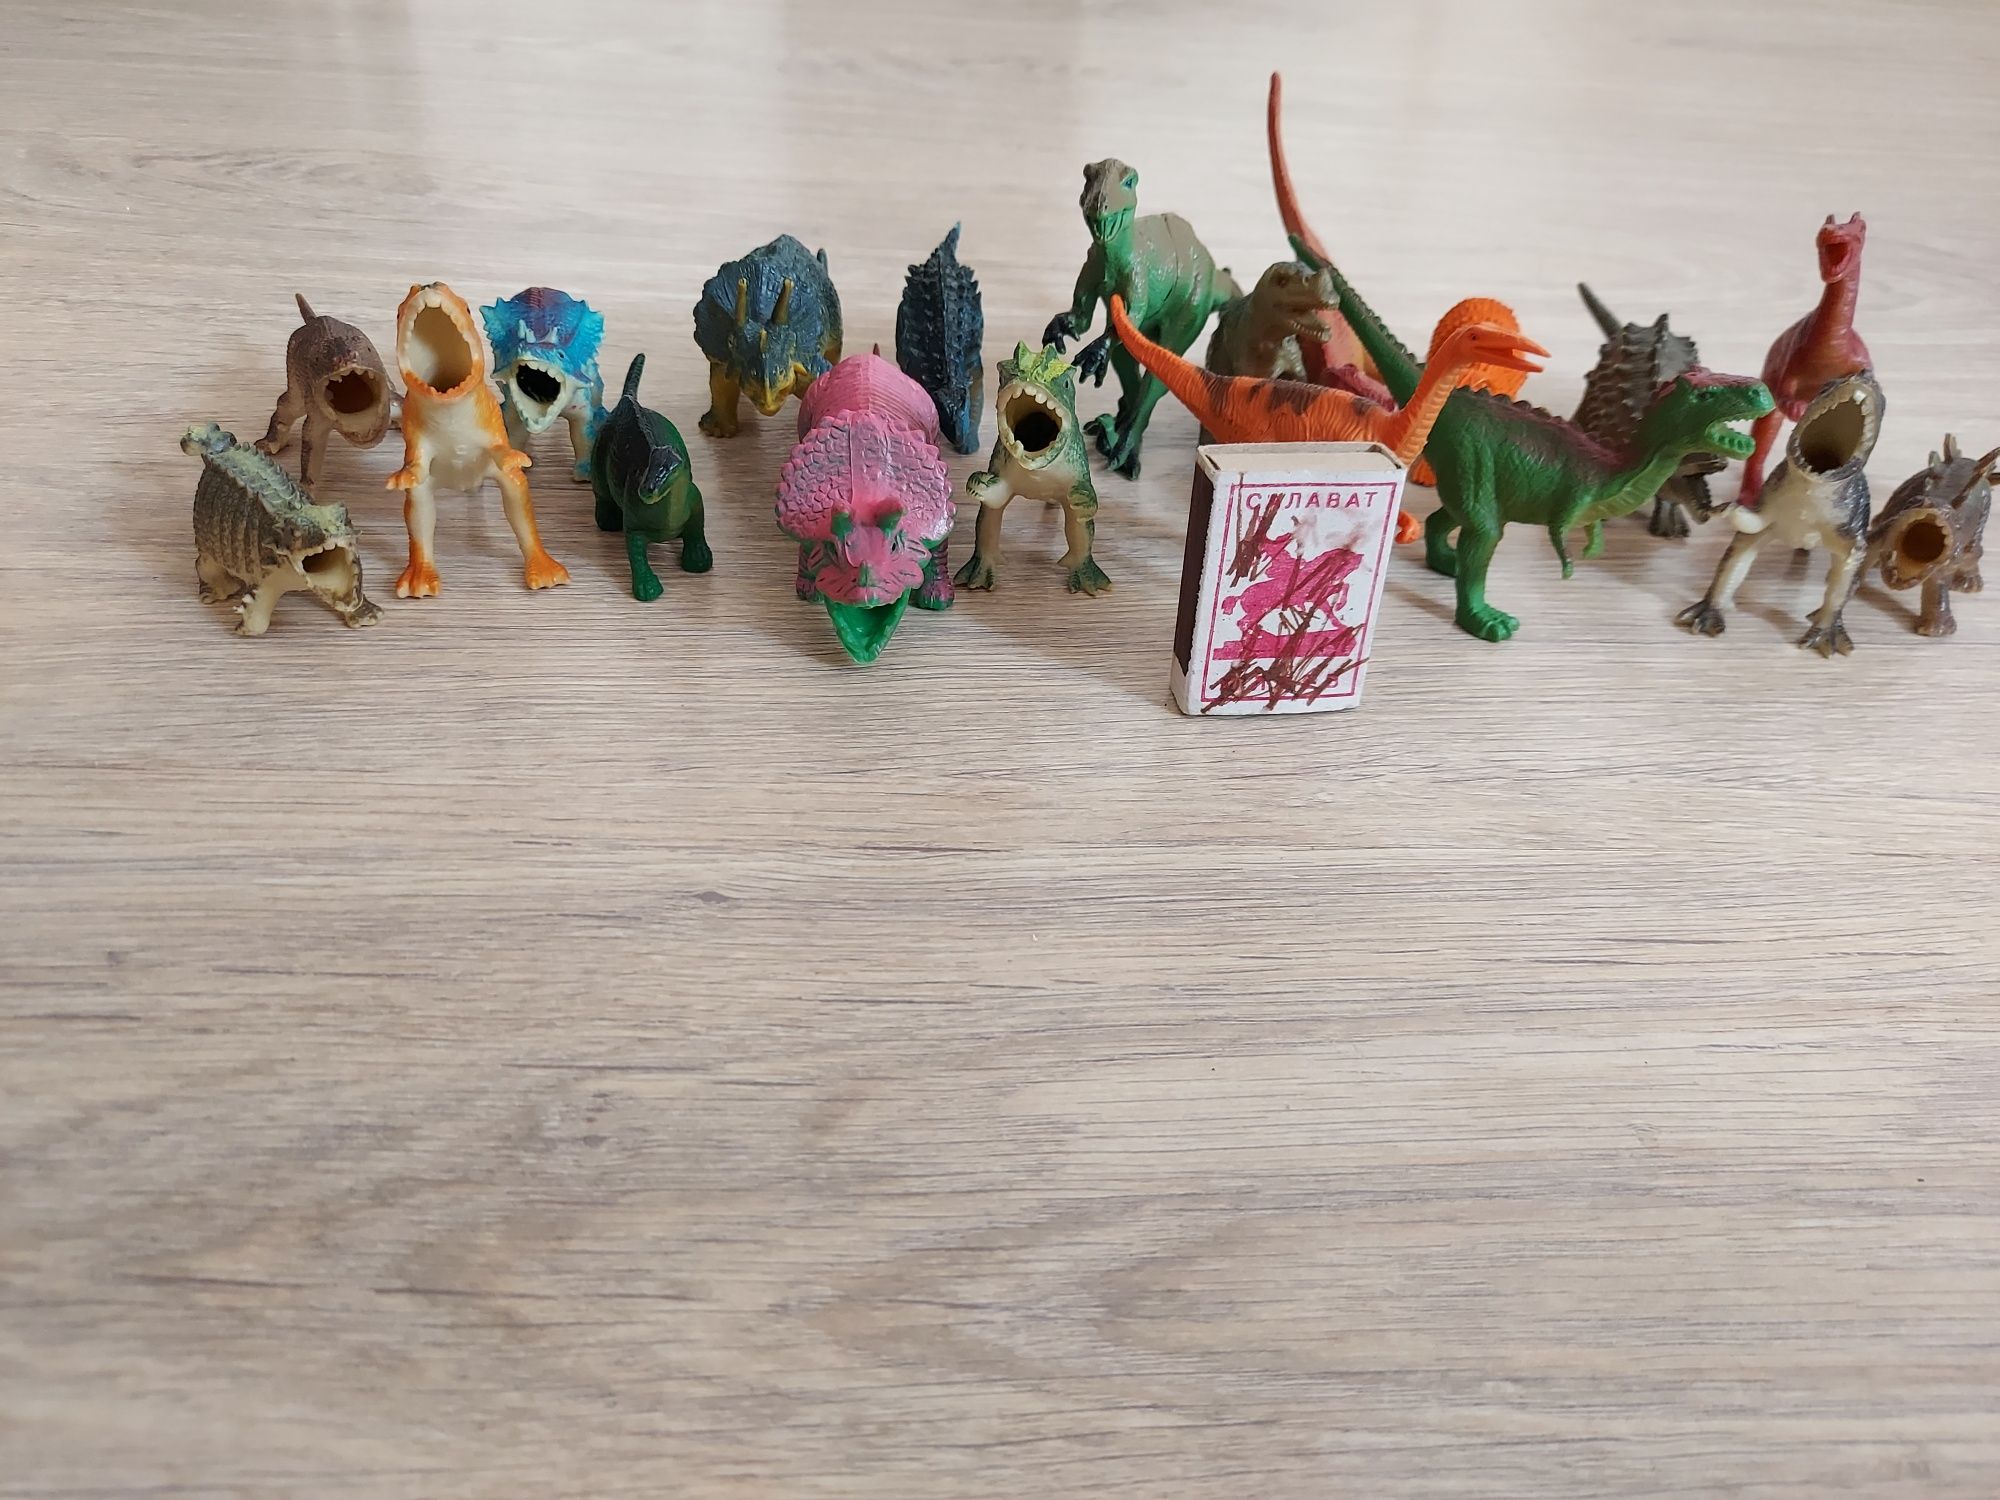 Продается динозавры игрушки штука 300 тенге